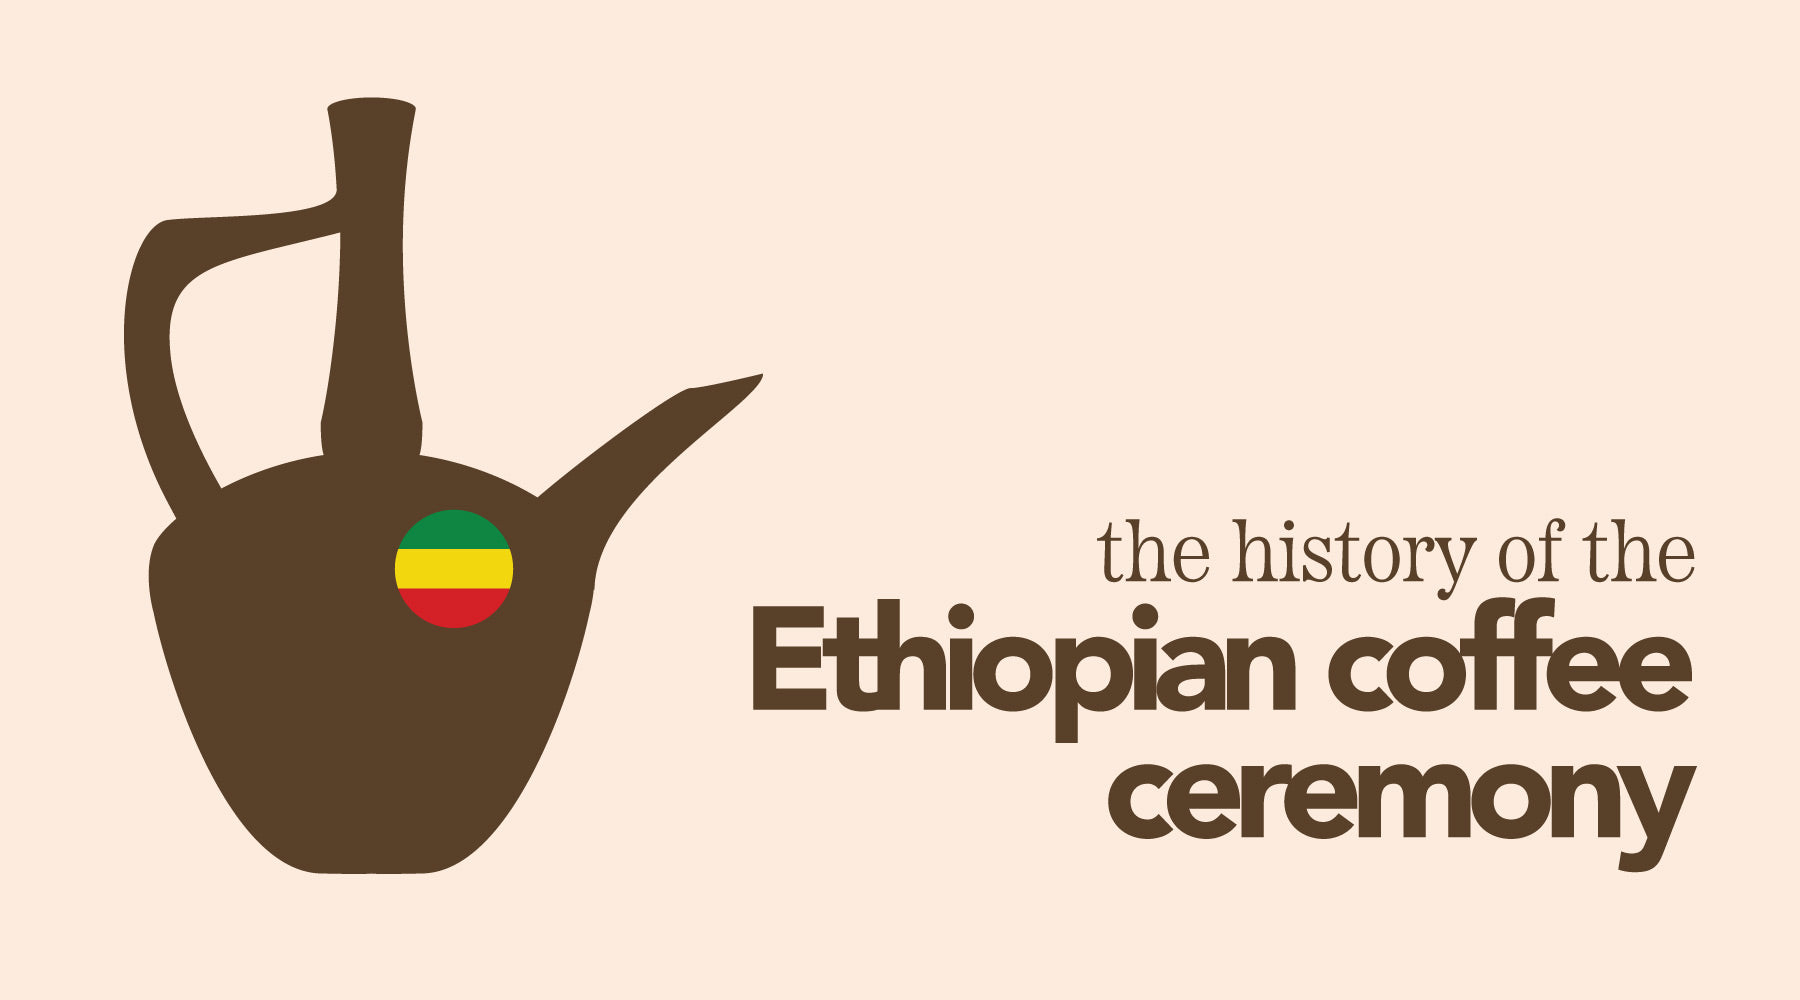 The Ethiopian Coffee Ceremony